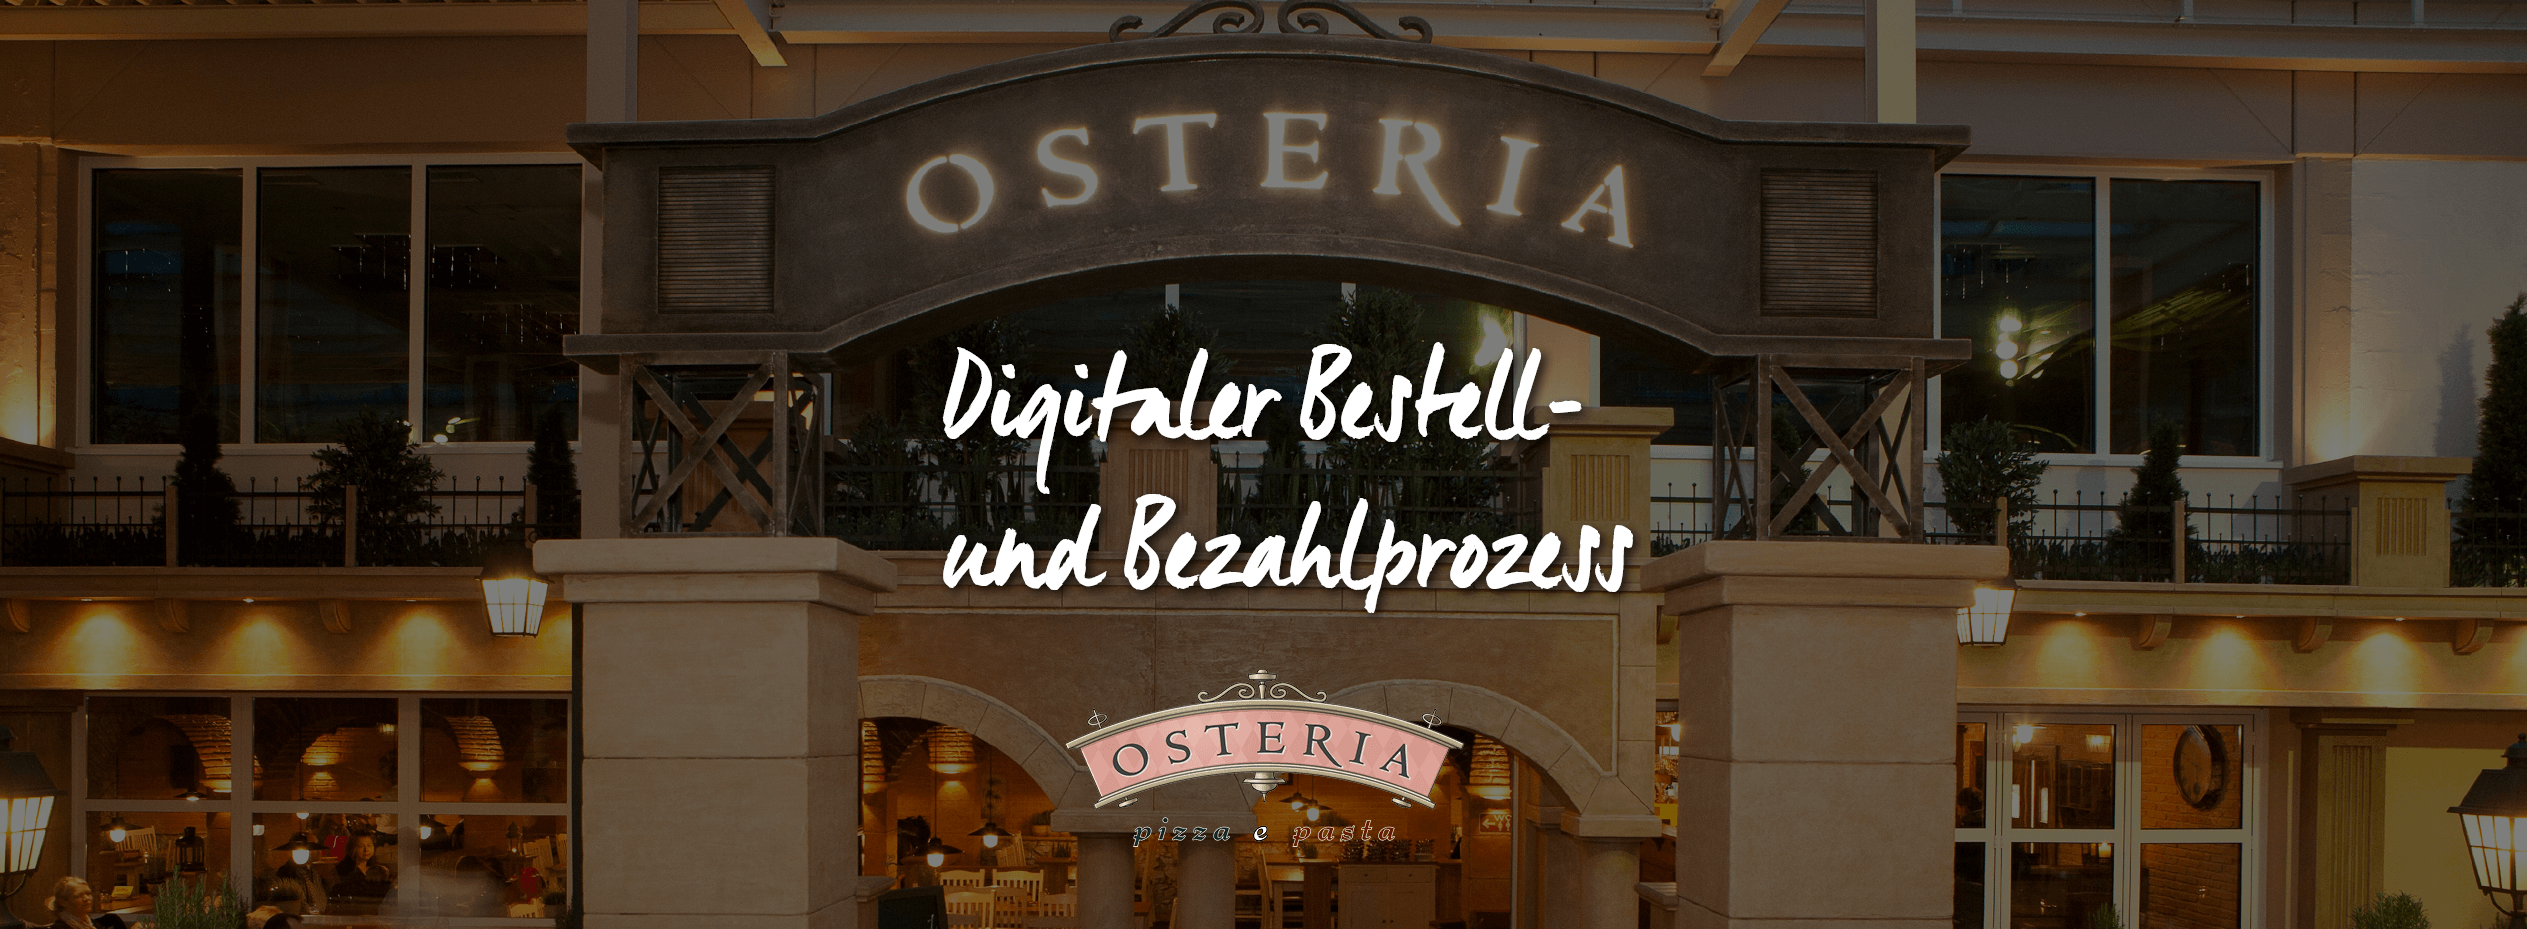 Erklaervideo Osteria Digitaler Bestell- und Bezahlprozess